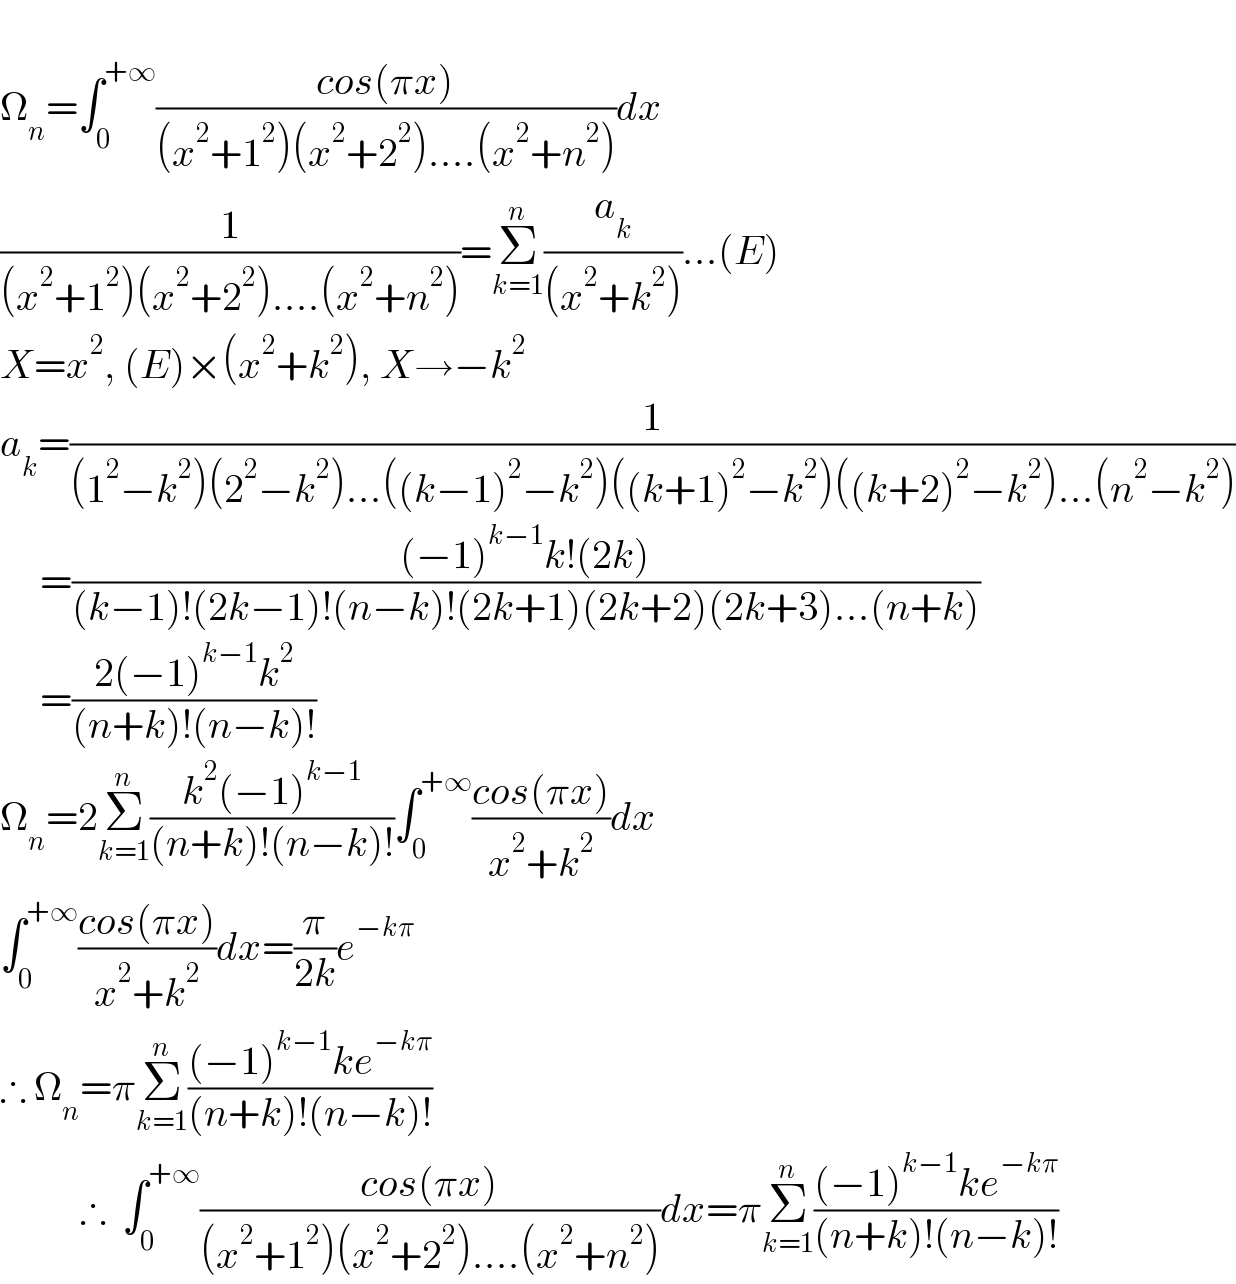   Ω_n =∫_0 ^(+∞) ((cos(πx))/((x^2 +1^2 )(x^2 +2^2 )....(x^2 +n^2 )))dx  (1/((x^2 +1^2 )(x^2 +2^2 )....(x^2 +n^2 )))=Σ_(k=1) ^n (a_k /((x^2 +k^2 )))...(E)  X=x^2 , (E)×(x^2 +k^2 ), X→−k^2   a_k =(1/((1^2 −k^2 )(2^2 −k^2 )...((k−1)^2 −k^2 )((k+1)^2 −k^2 )((k+2)^2 −k^2 )...(n^2 −k^2 )))       =(((−1)^(k−1) k!(2k))/((k−1)!(2k−1)!(n−k)!(2k+1)(2k+2)(2k+3)...(n+k)))       =((2(−1)^(k−1) k^2 )/((n+k)!(n−k)!))  Ω_n =2Σ_(k=1) ^n ((k^2 (−1)^(k−1) )/((n+k)!(n−k)!))∫_0 ^(+∞) ((cos(πx))/(x^2 +k^2 ))dx  ∫_0 ^(+∞) ((cos(πx))/(x^2 +k^2 ))dx=(π/(2k))e^(−kπ)   ∴ Ω_n =πΣ_(k=1) ^n (((−1)^(k−1) ke^(−kπ) )/((n+k)!(n−k)!))            ∴  ∫_0 ^(+∞) ((cos(πx))/((x^2 +1^2 )(x^2 +2^2 )....(x^2 +n^2 )))dx=πΣ_(k=1) ^n (((−1)^(k−1) ke^(−kπ) )/((n+k)!(n−k)!))  